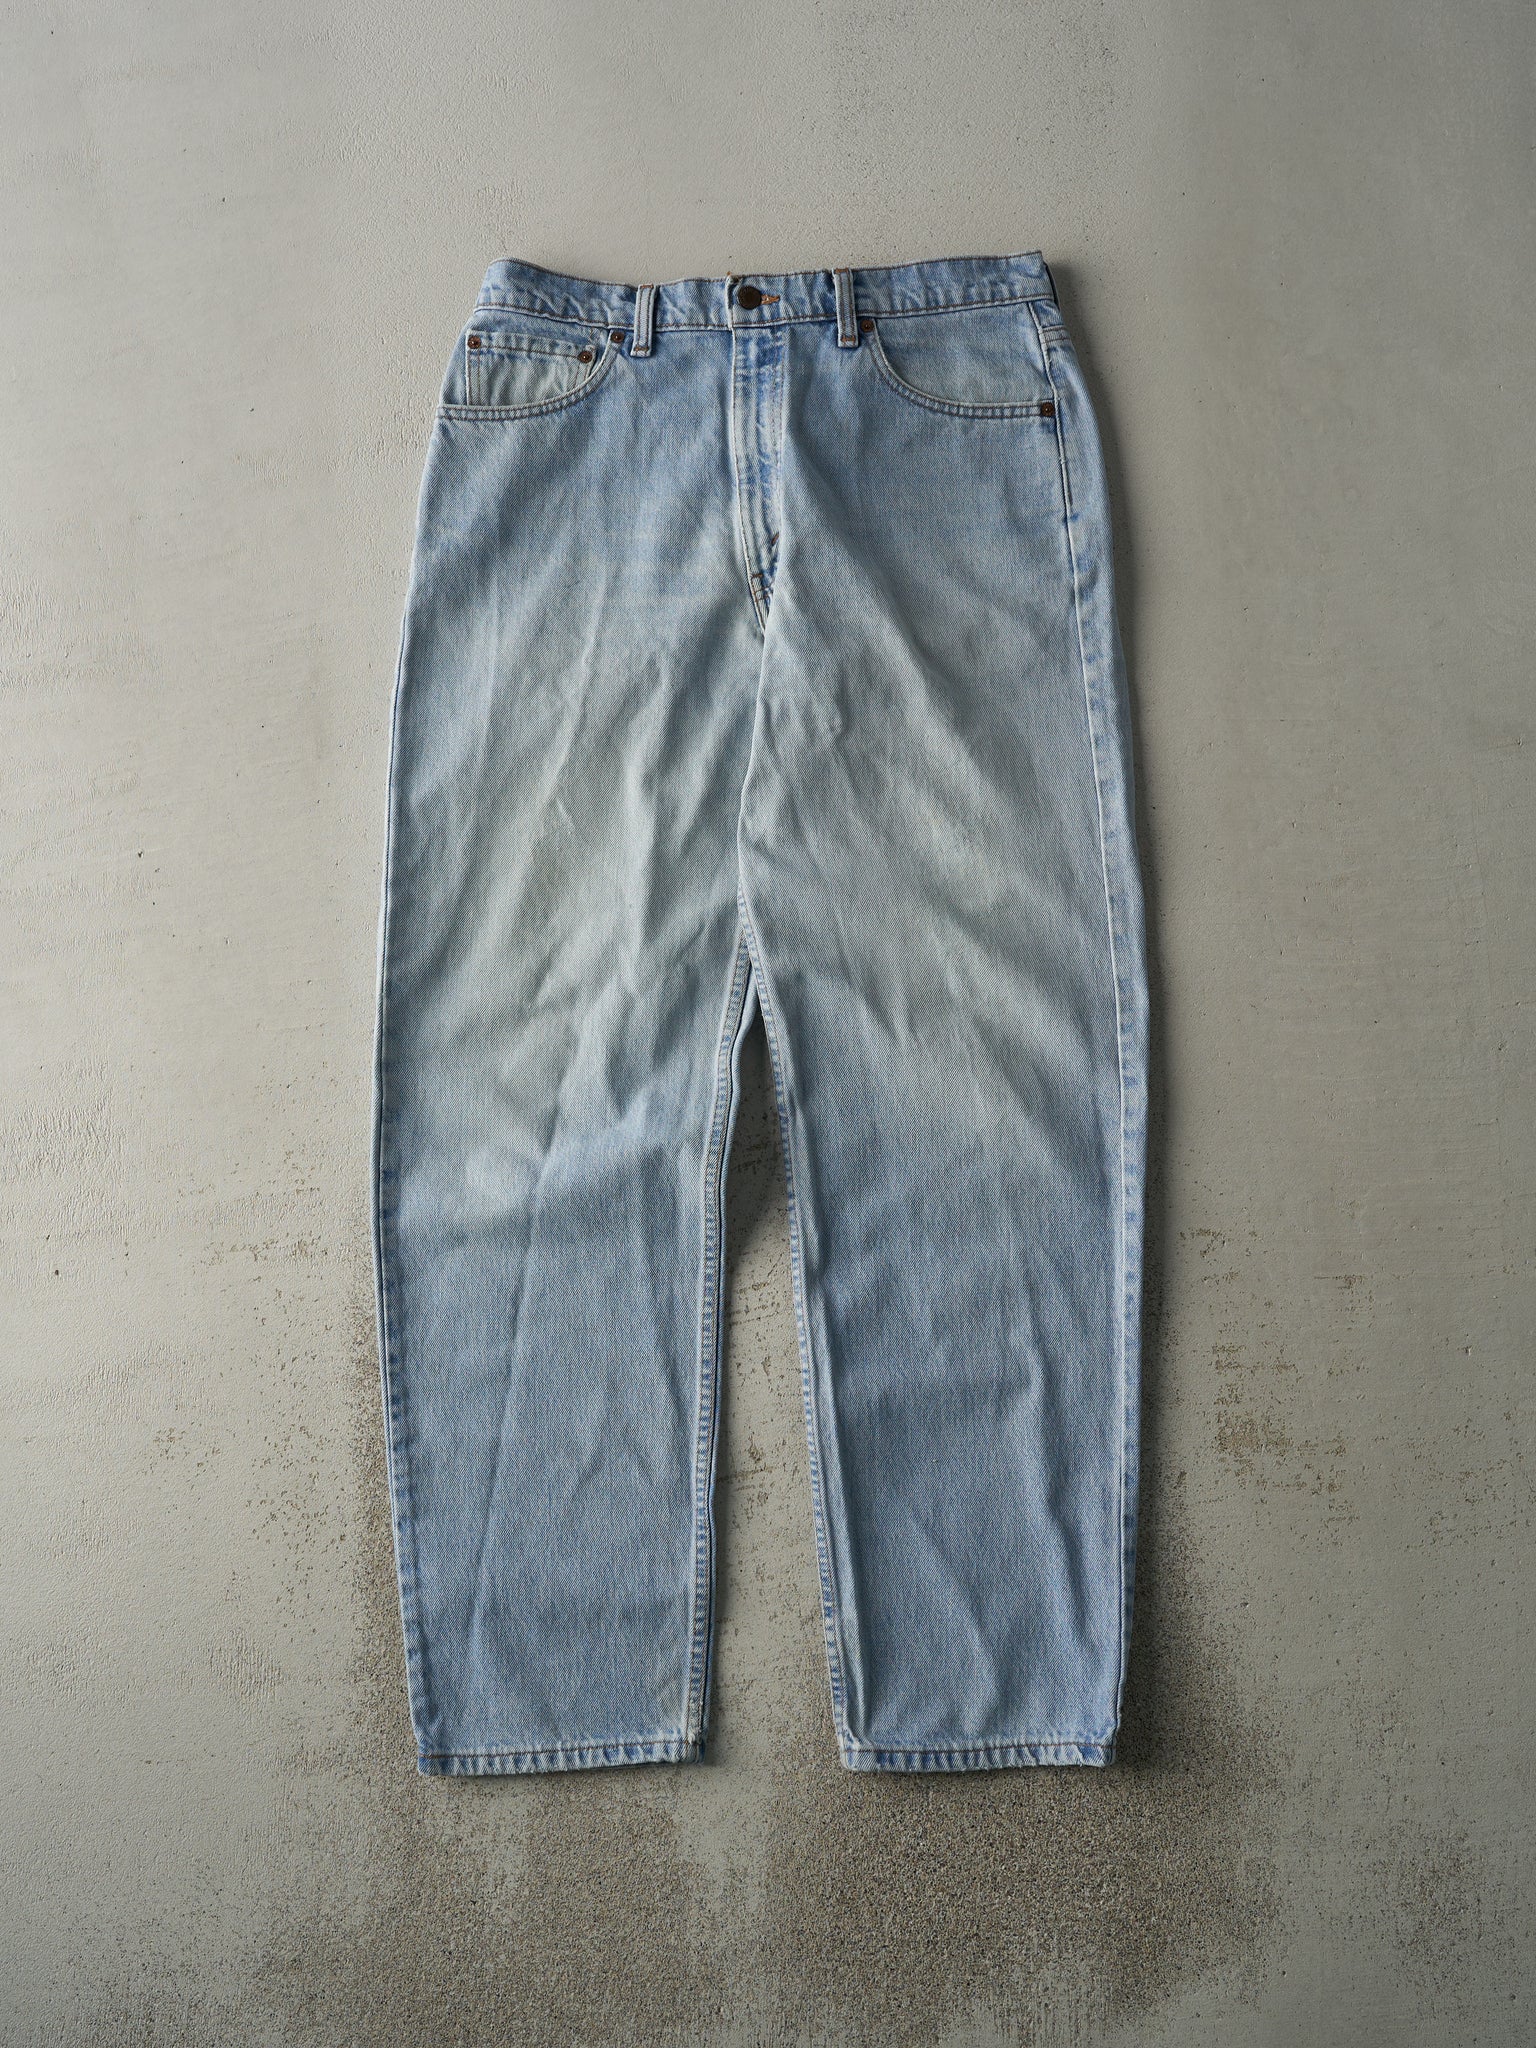 Vintage 90s Light Wash Levi's 555 Jeans (34x32.5)